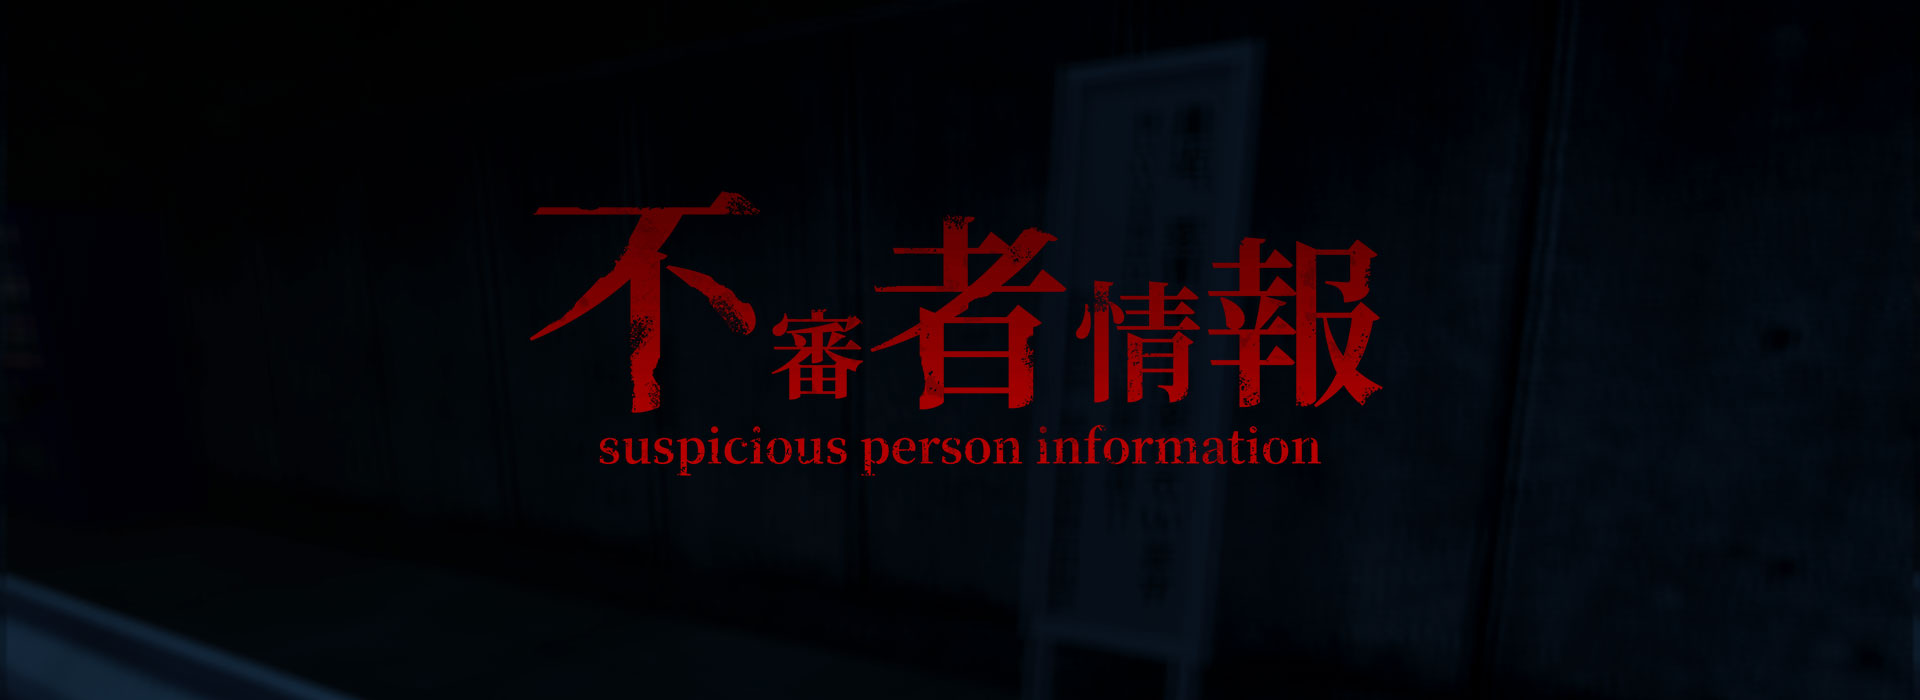 Suspicious Person Information